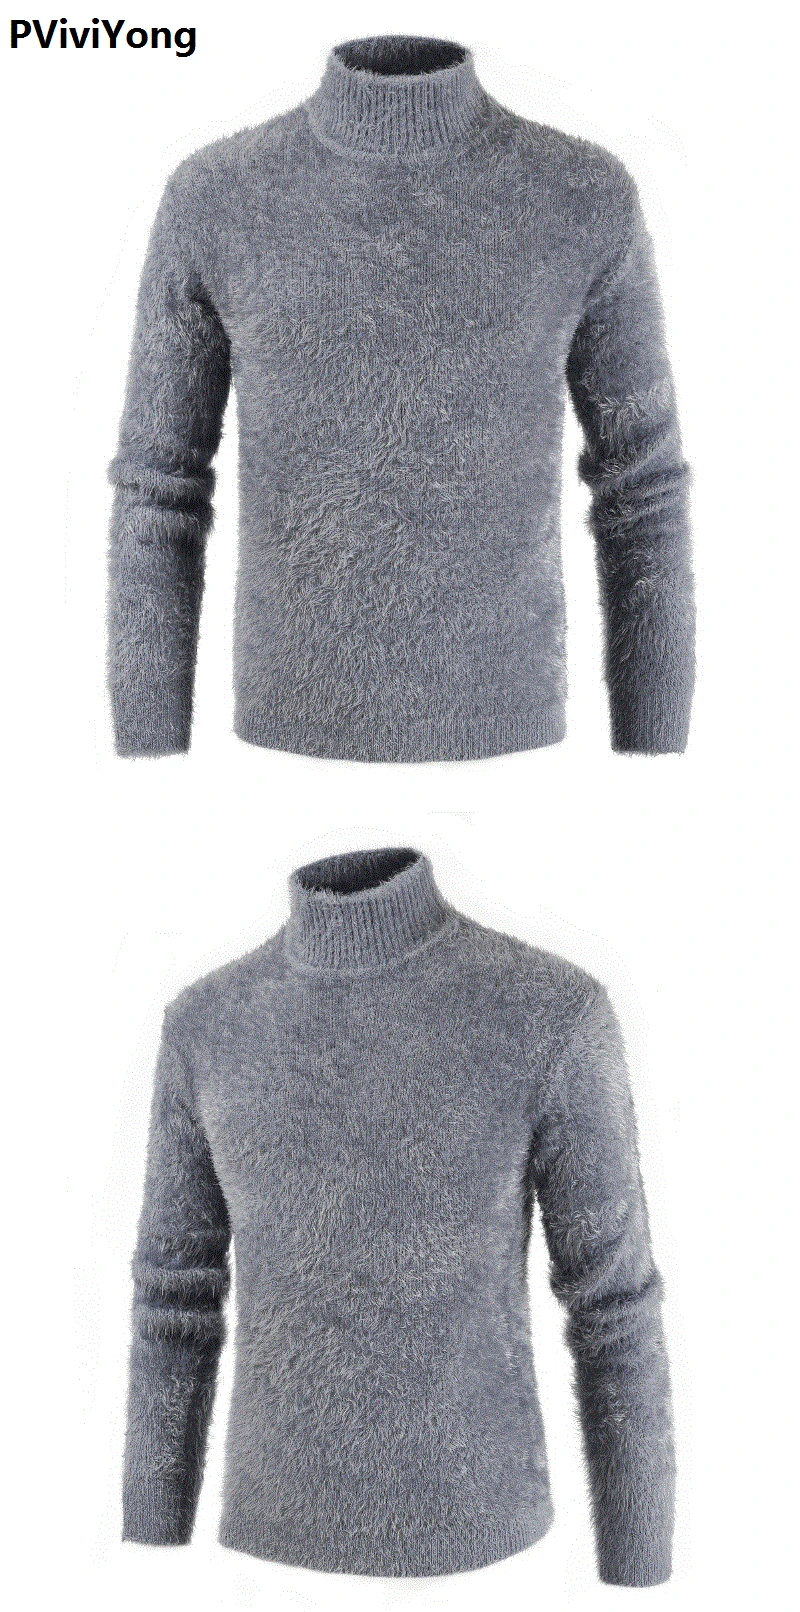 PViviYong Новое поступление осенний высококачественный мужской свитер с принтом и высоким воротником, мужские повседневные тонкие пуловеры 316